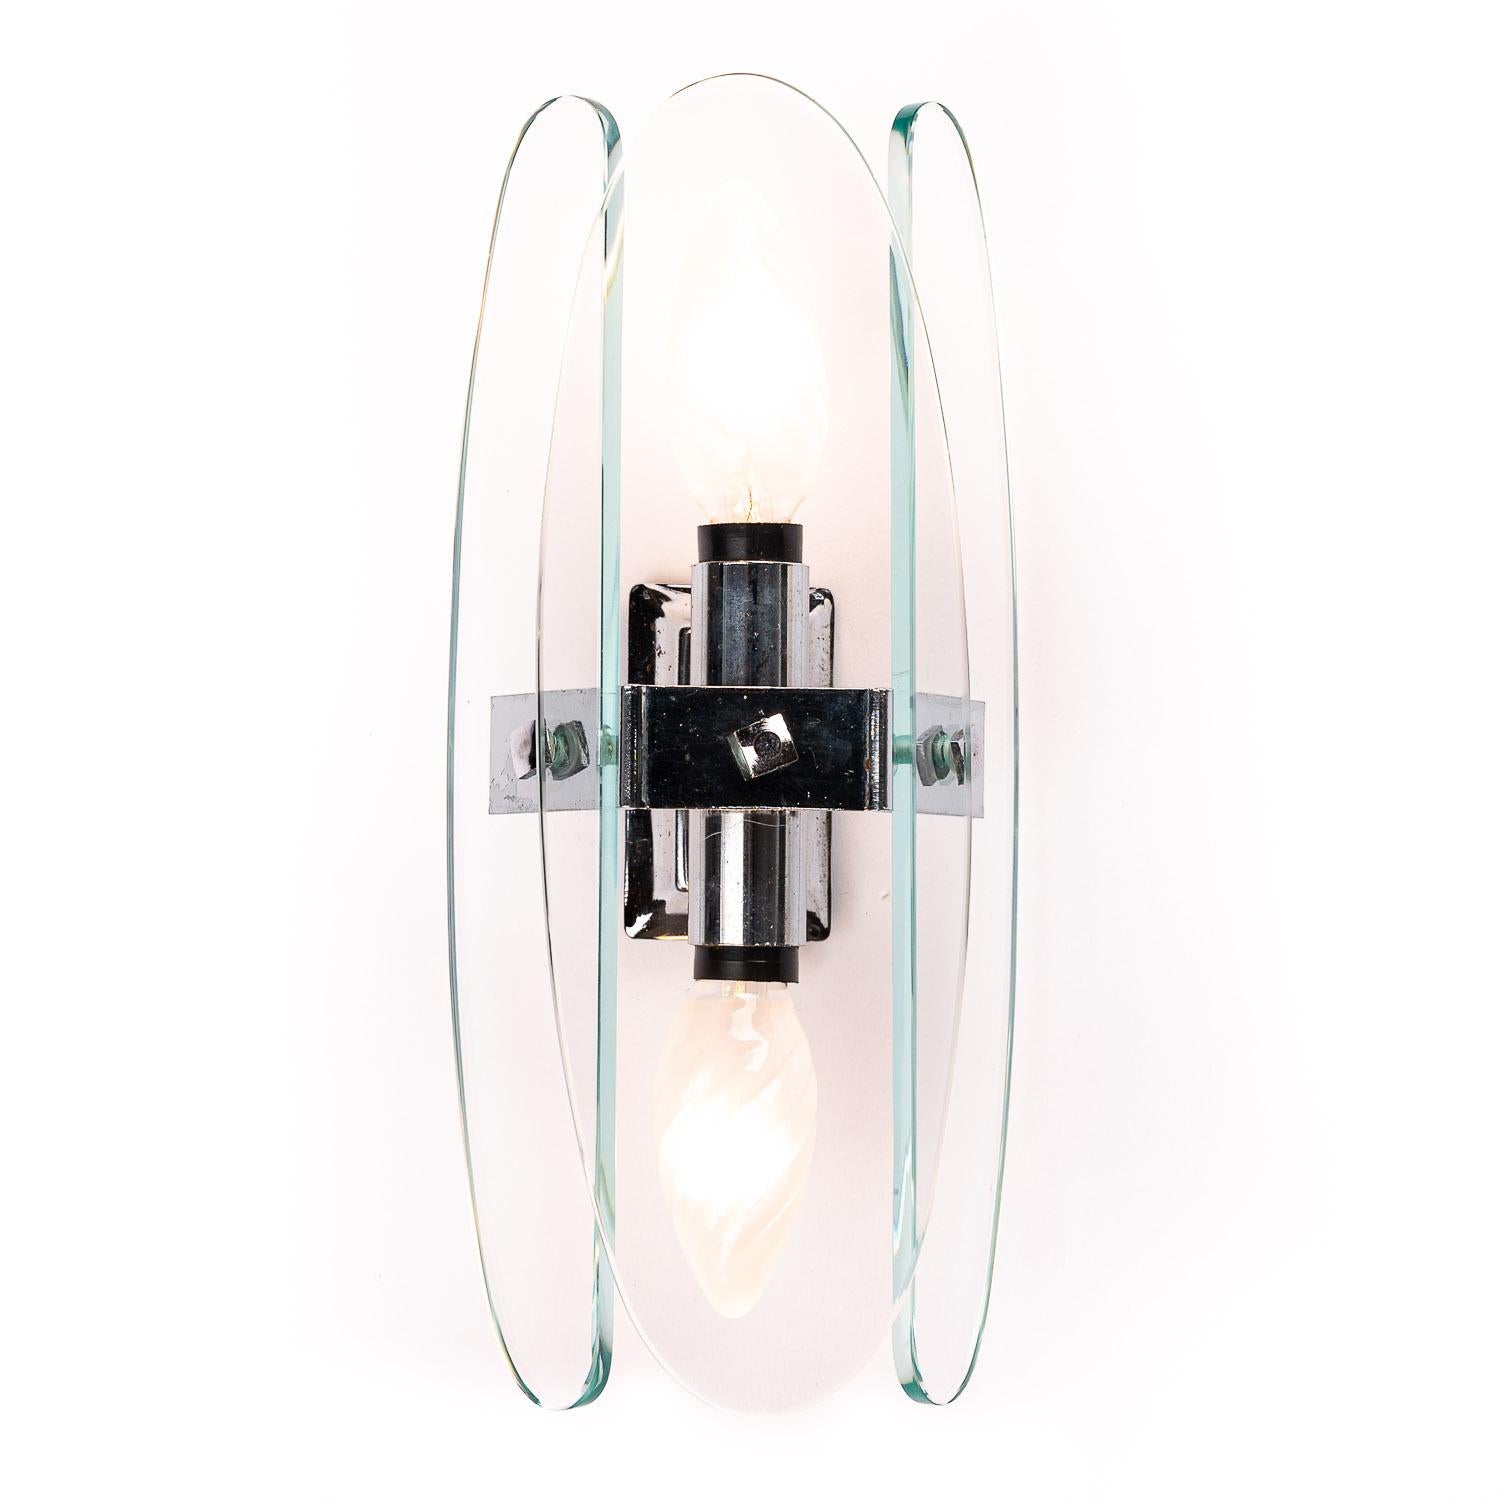 Dies ist ein außergewöhnliches Stück des Designers Veca aus Italien. Drei klare Glaskeile mit Lamellen, die zwei E14-Glühbirnen umgeben.